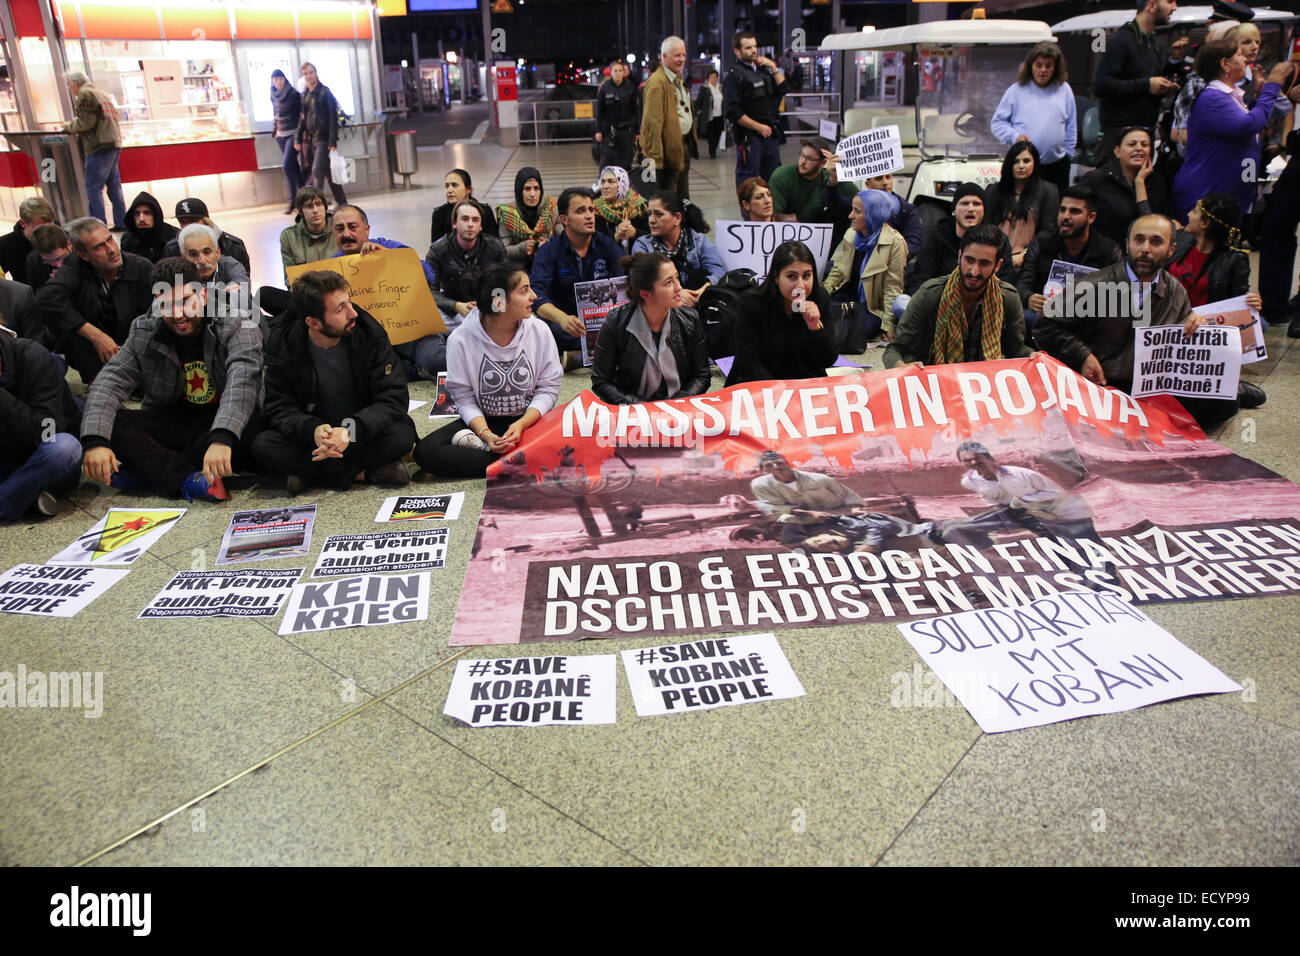 Salvare kobane persone sedersi protesta Monaco di Baviera stazione ferroviaria Foto Stock